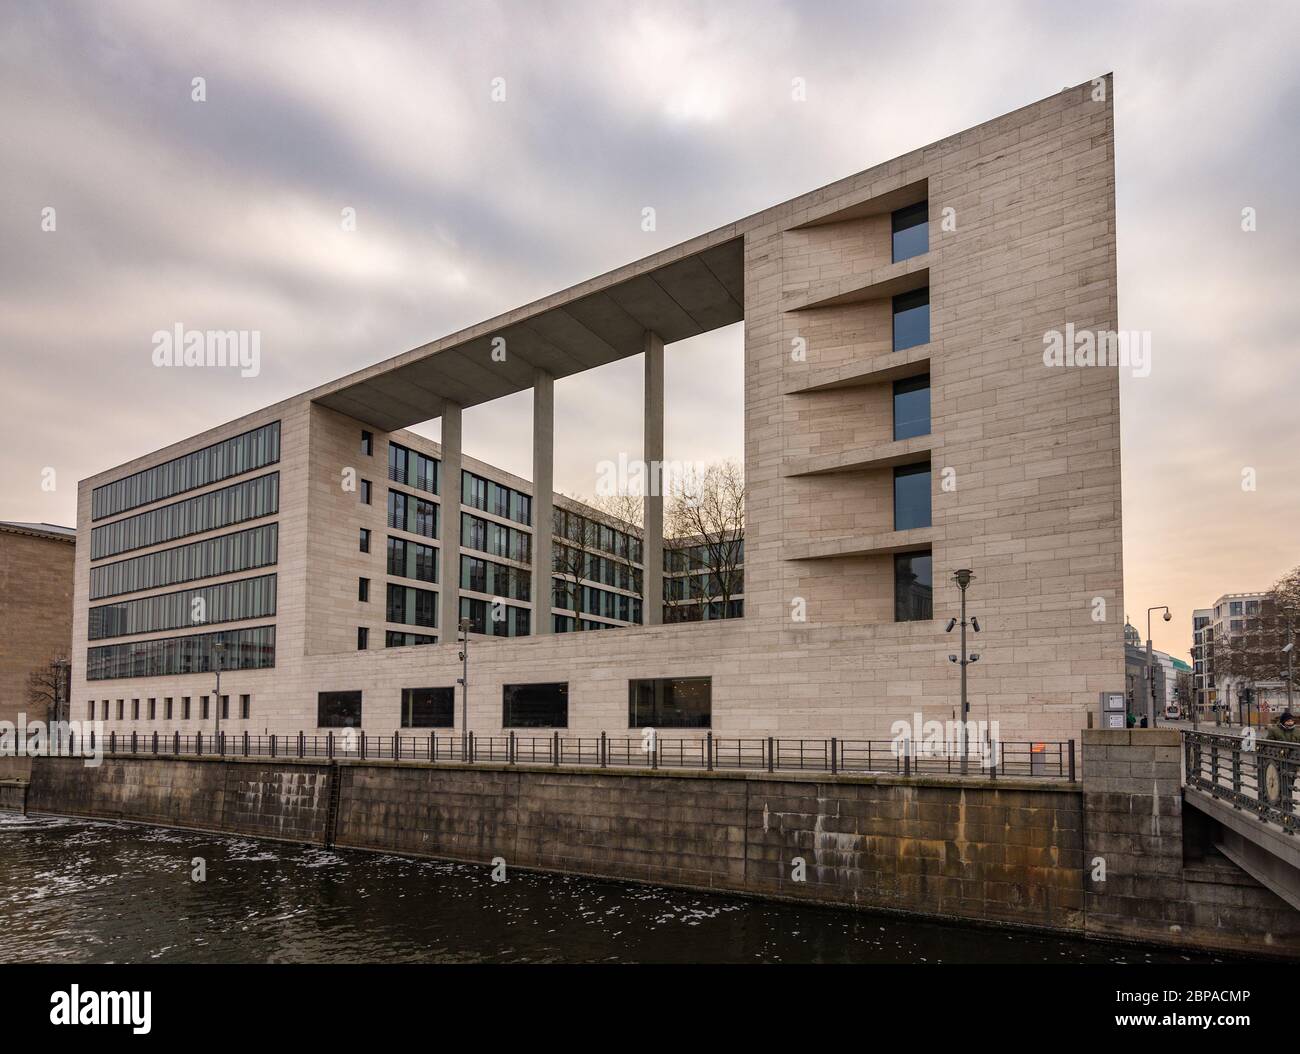 Berlin / Allemagne - 12 février 2017 : Bureau fédéral des affaires étrangères (Auswärtiges Amt), bâtiment du ministère des affaires étrangères de la République fédérale d'Allemagne à Berlin Banque D'Images